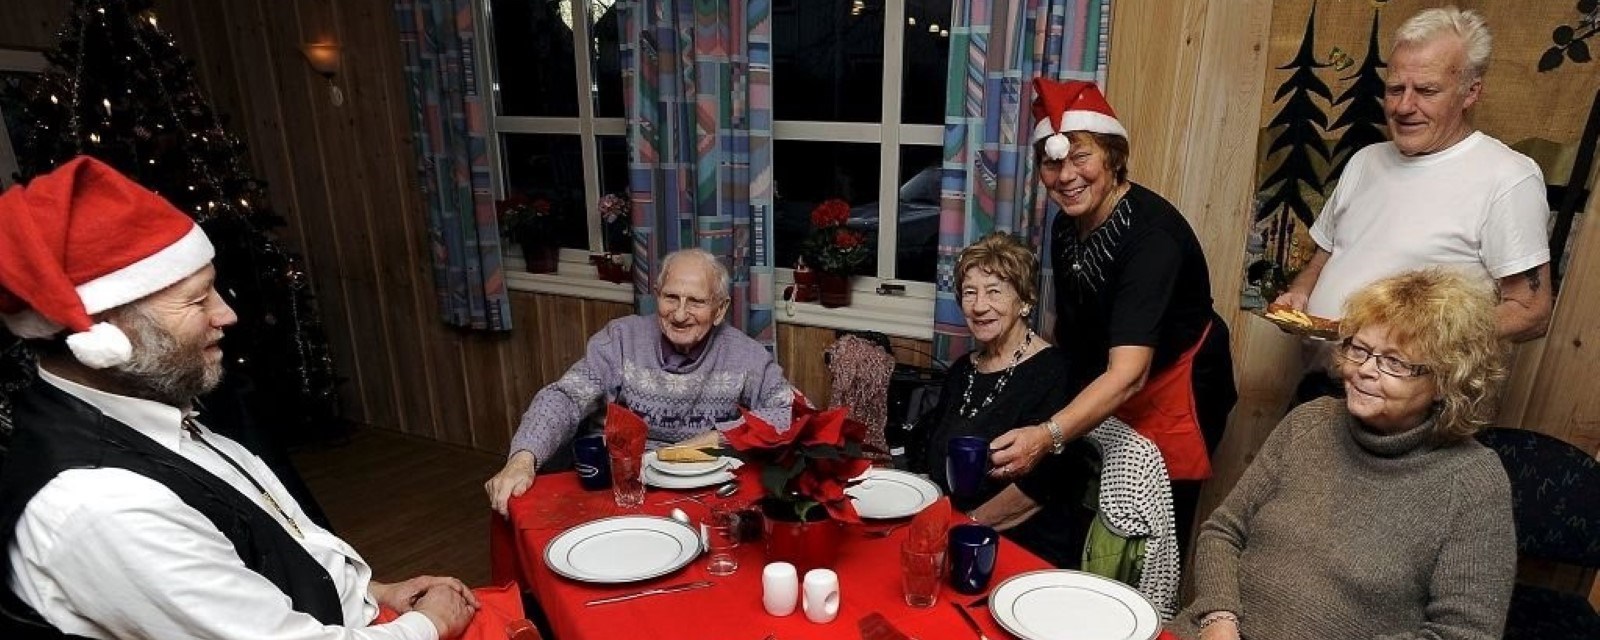 Et lag med voksne og eldre sitter rundt et bord dekket for julekos